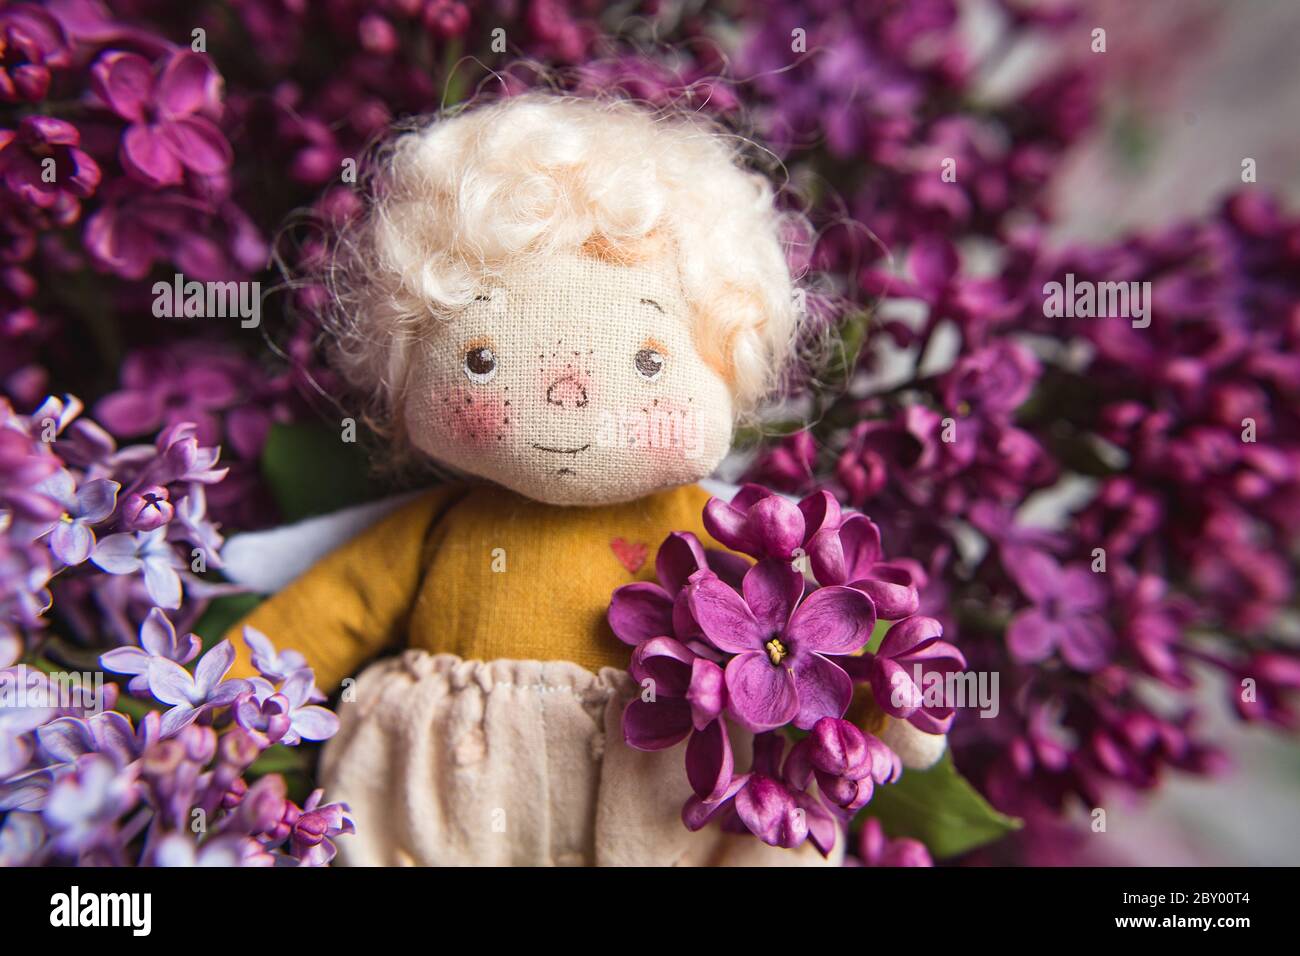 Kleiner goldhaariger Engel in den blauen, rosa, lila, violetten lila Blüten. Handgemachtes Spielzeug in violetten Flieder Farben. Stockfoto